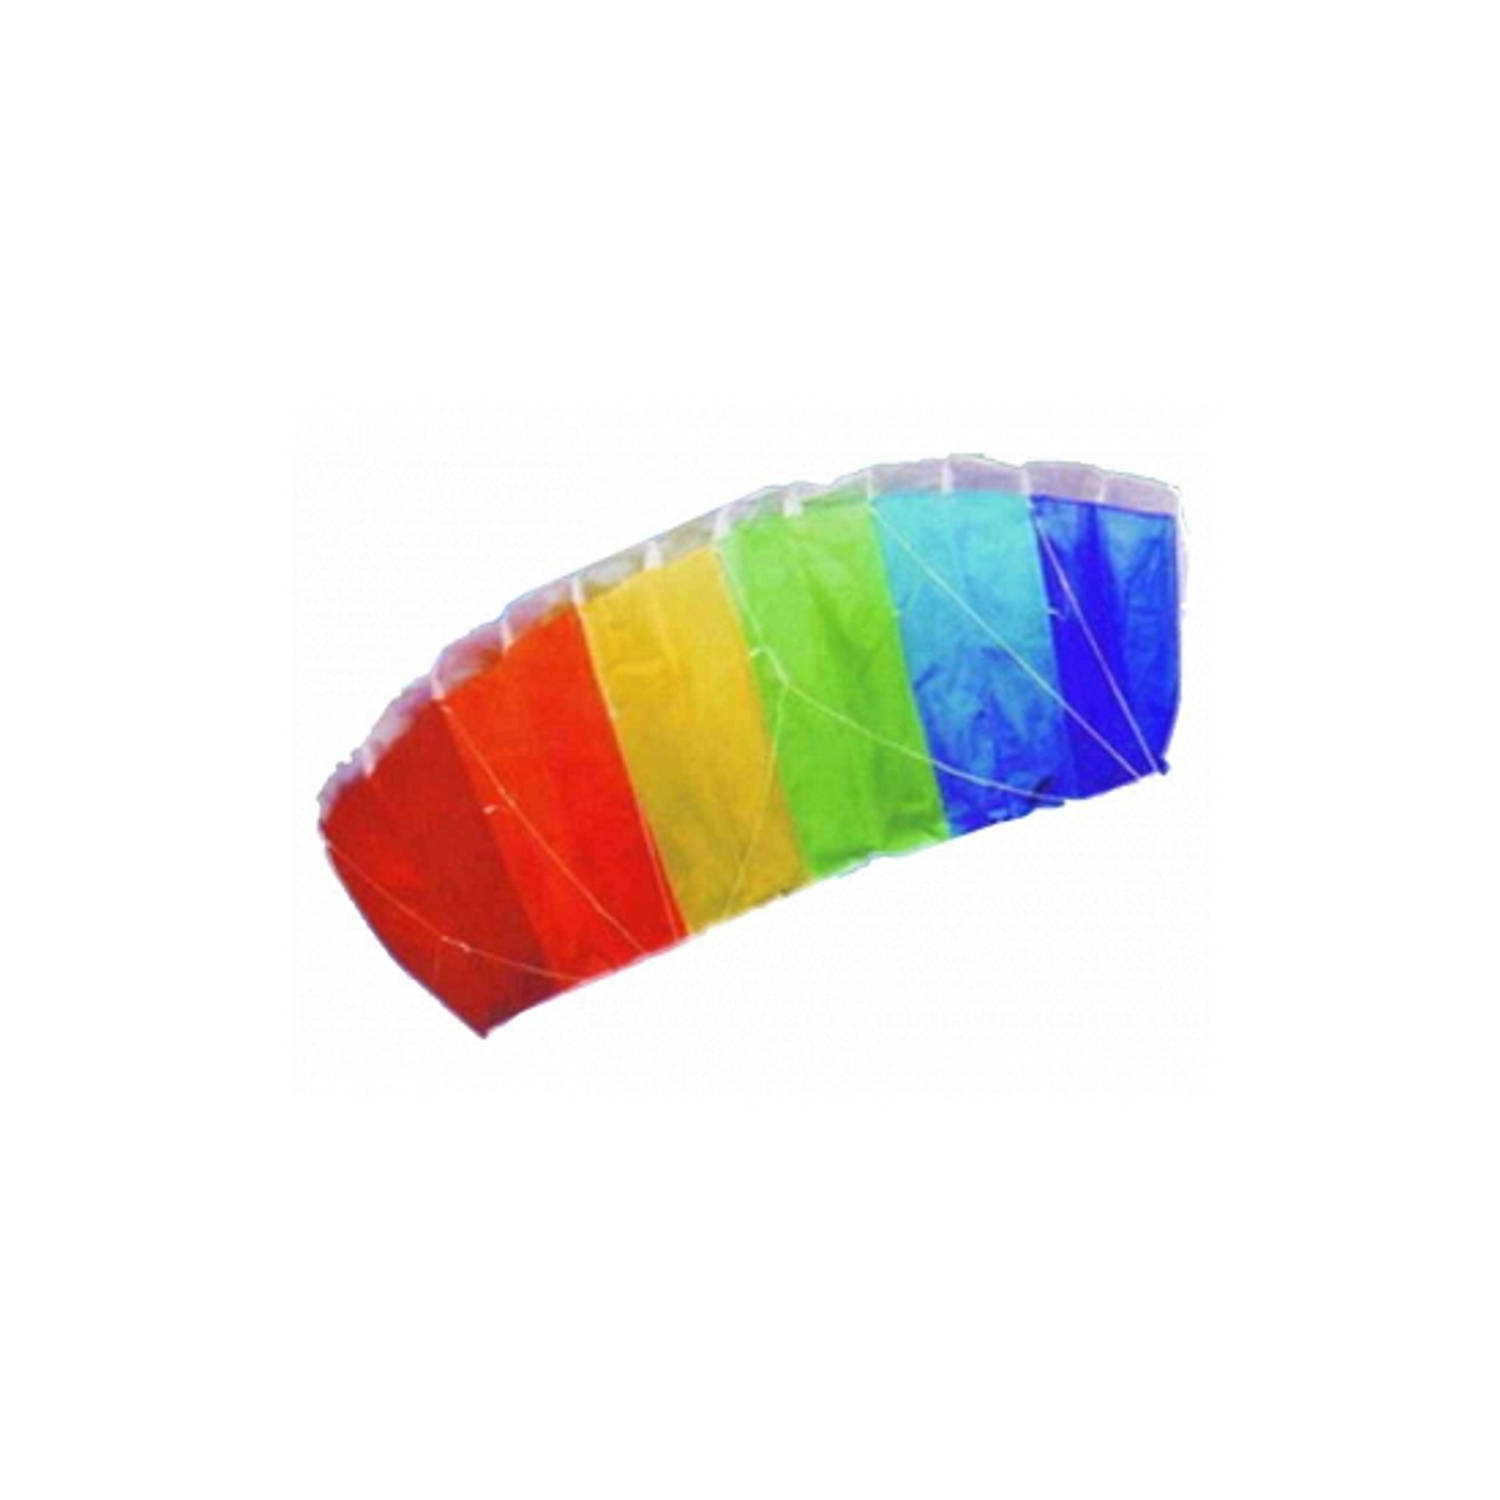 Mediaan universiteitsstudent Riskant Matras vlieger rainbow 120 x 55 cm - Vliegers | Blokker